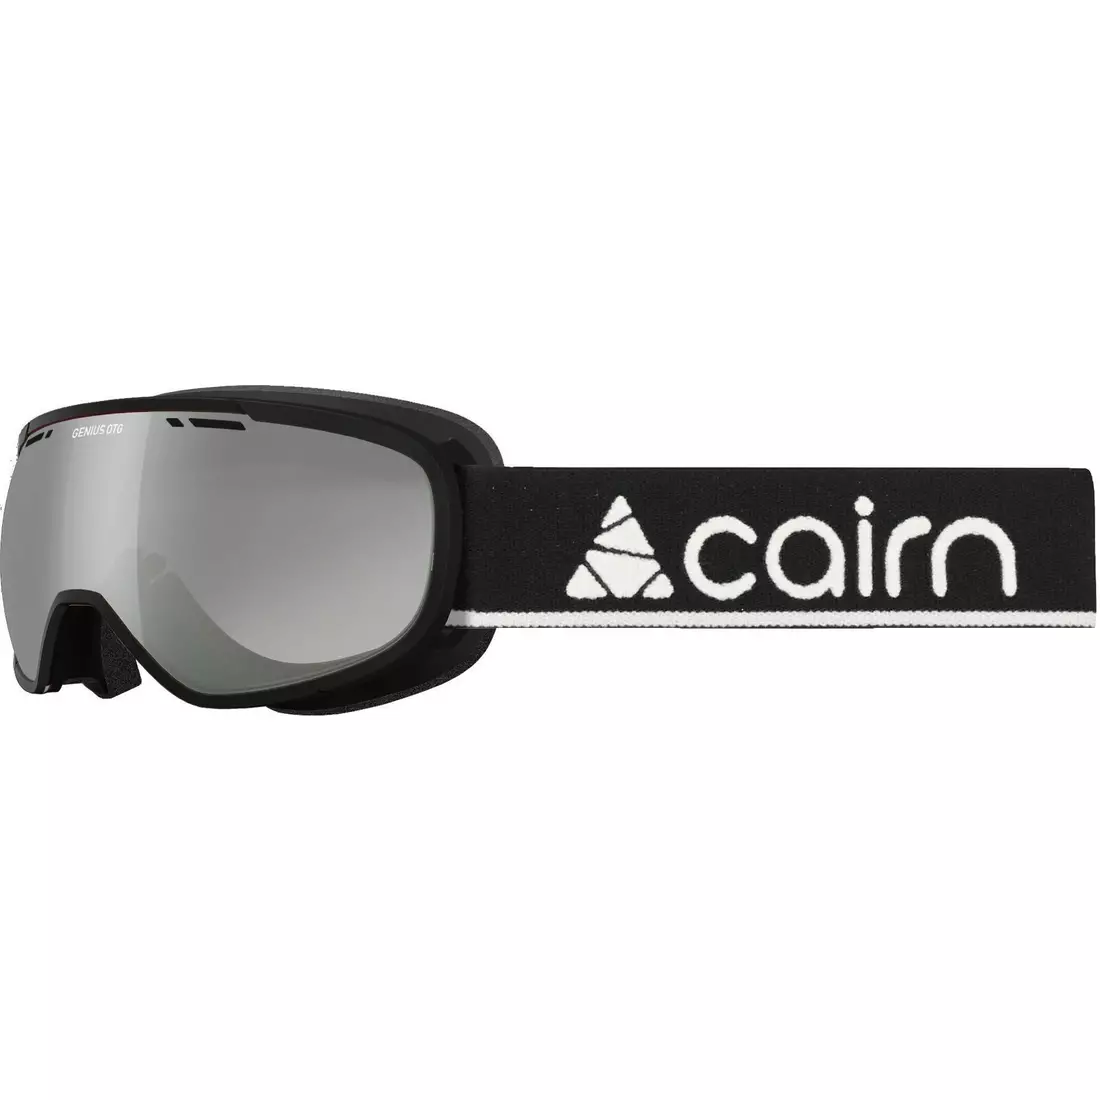 CAIRN lyžařské/snowboardové brýle GENIUS OTG SPX3000 black 581300802